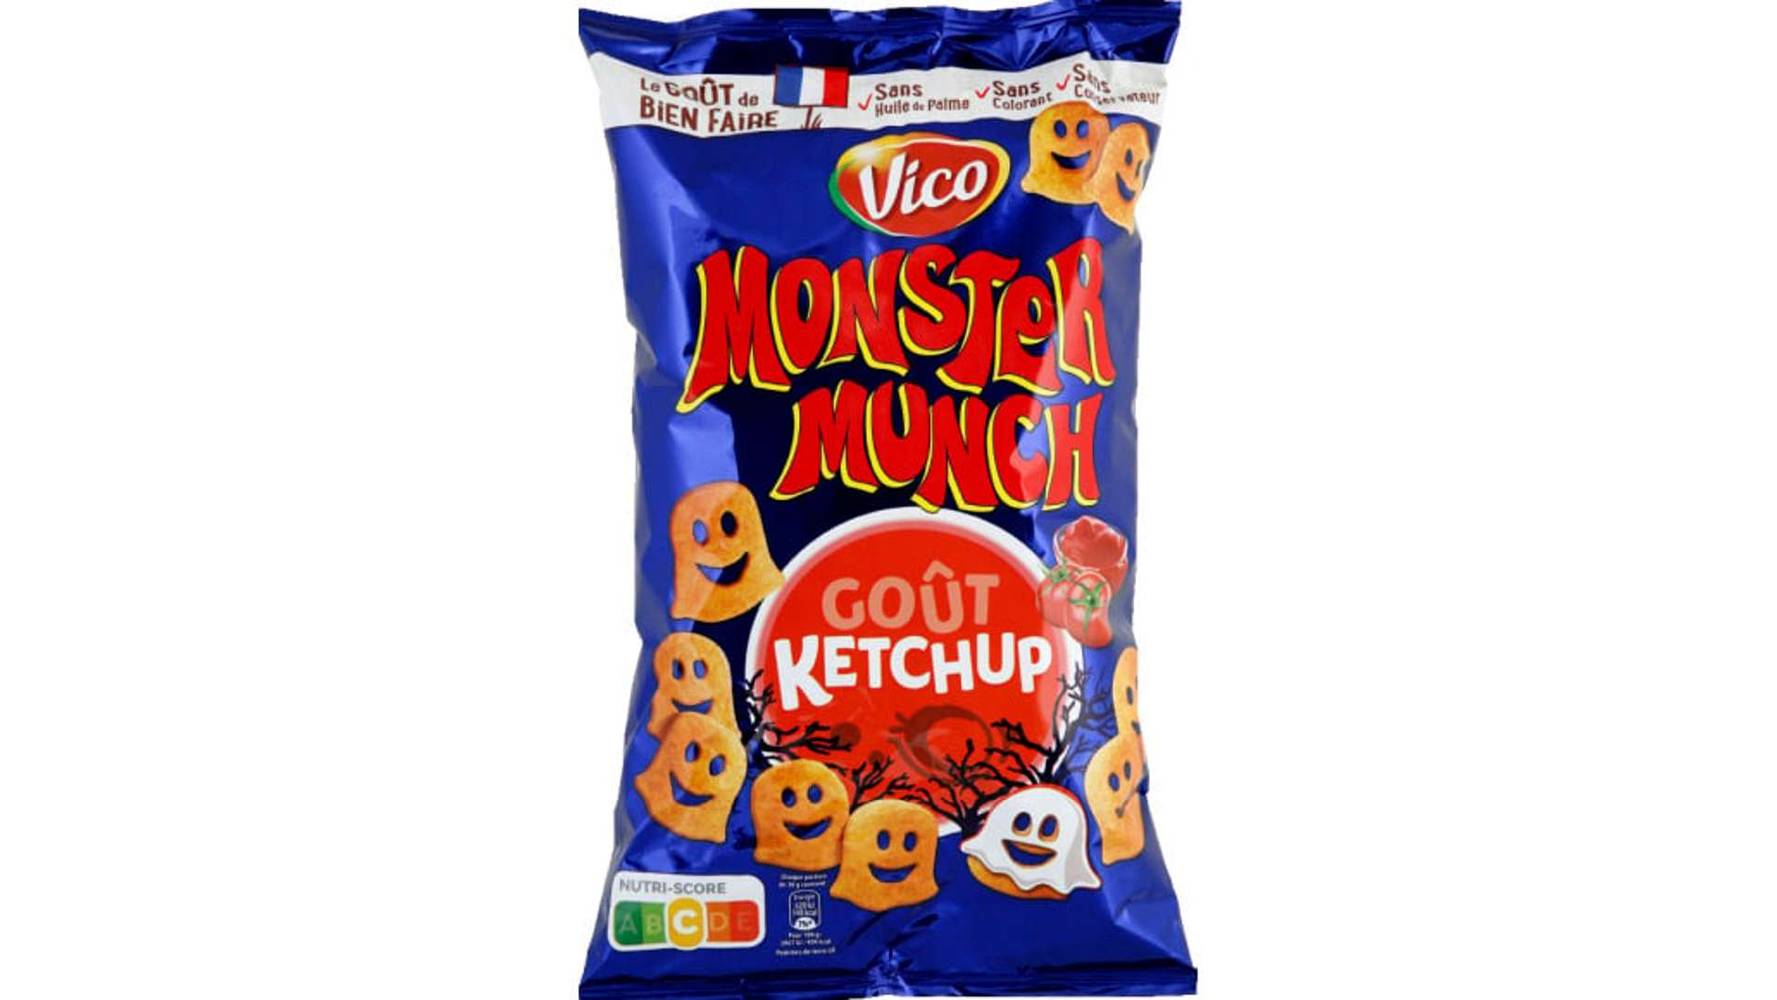 Monster Munch Biscuit apéritif Monster Munch Ketchup 85g Le sachet de 85g